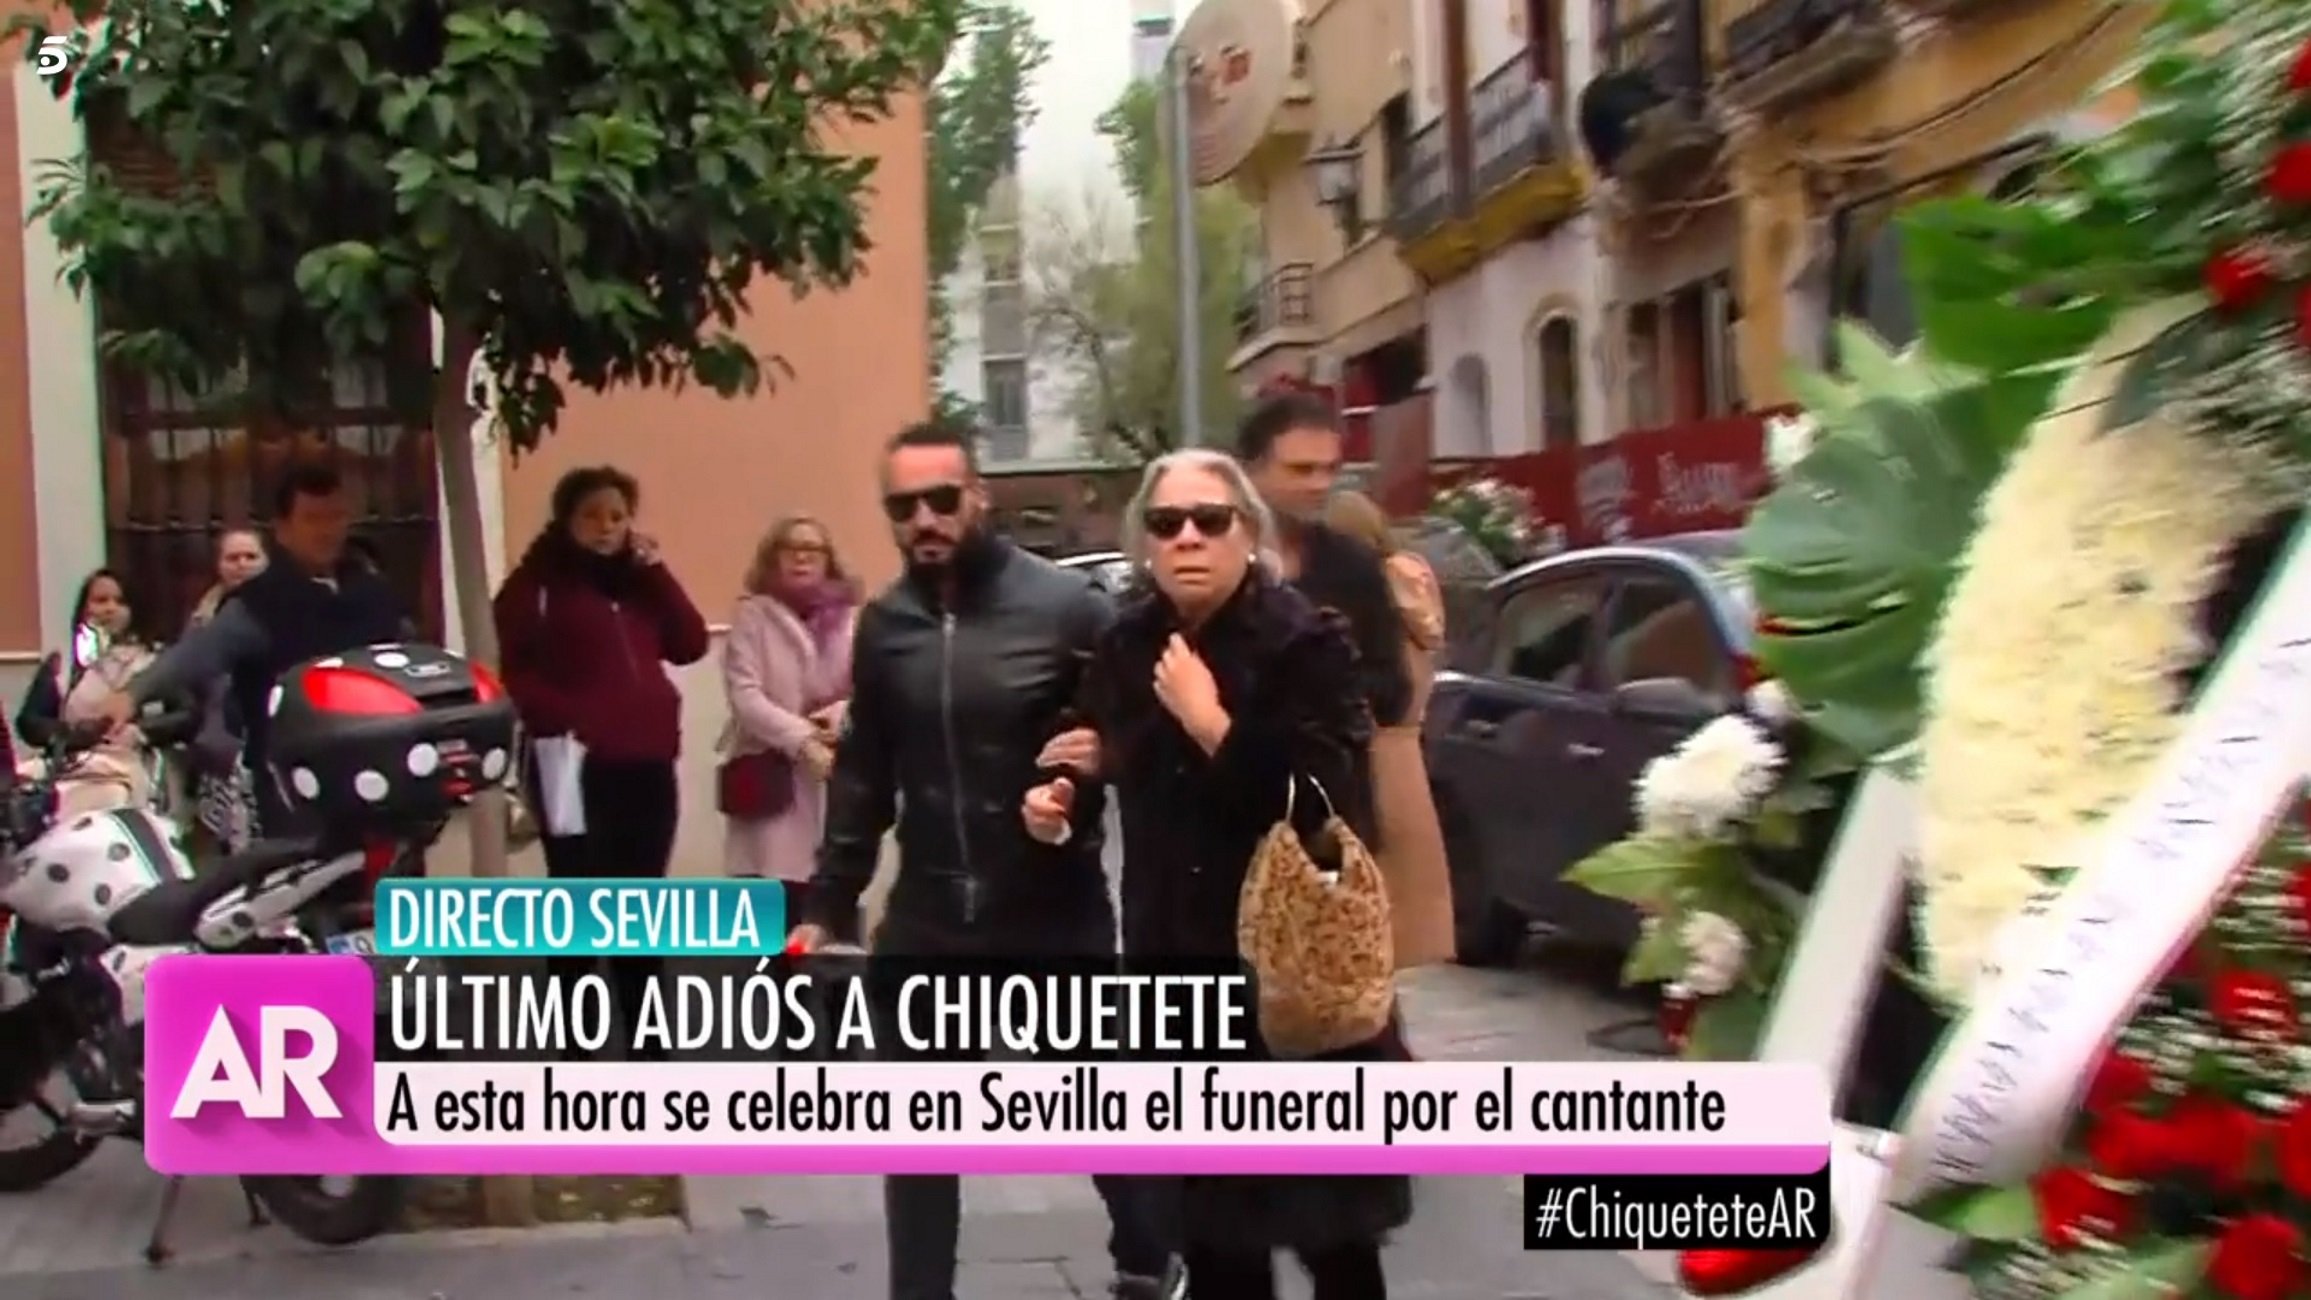 El funeral de Chiquetete acaba en desastre: la pareja y la amante se pelean a gritos